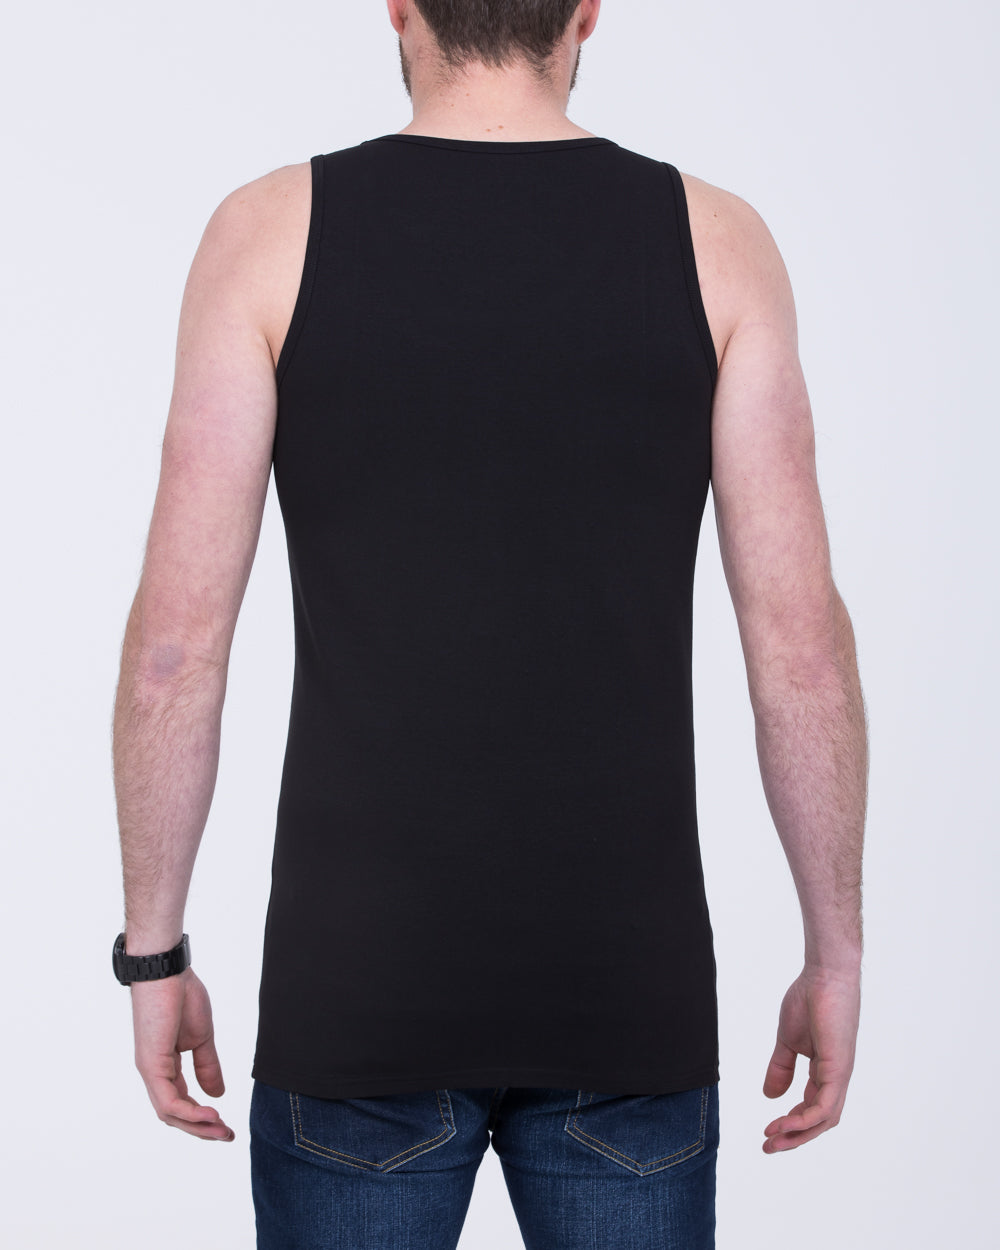 Girav Sleeveless Extra Tall Vest (black) Twin Pack